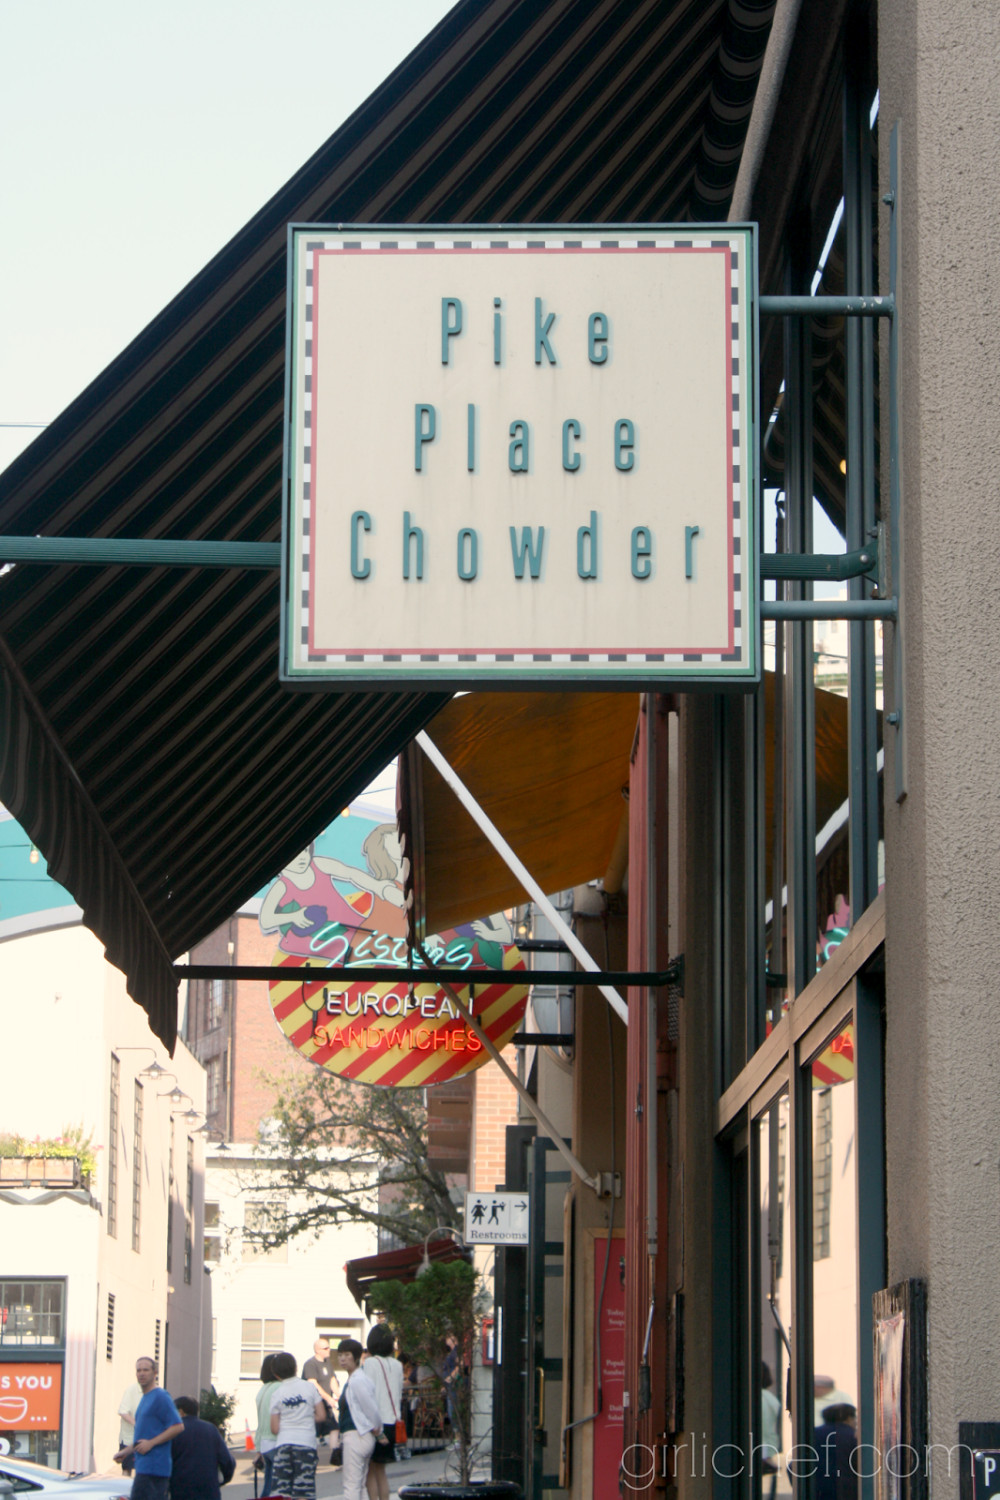 Best Smoked Salmon Seattle
 Smoked Salmon Chowder Pike Place Chowder Copycat